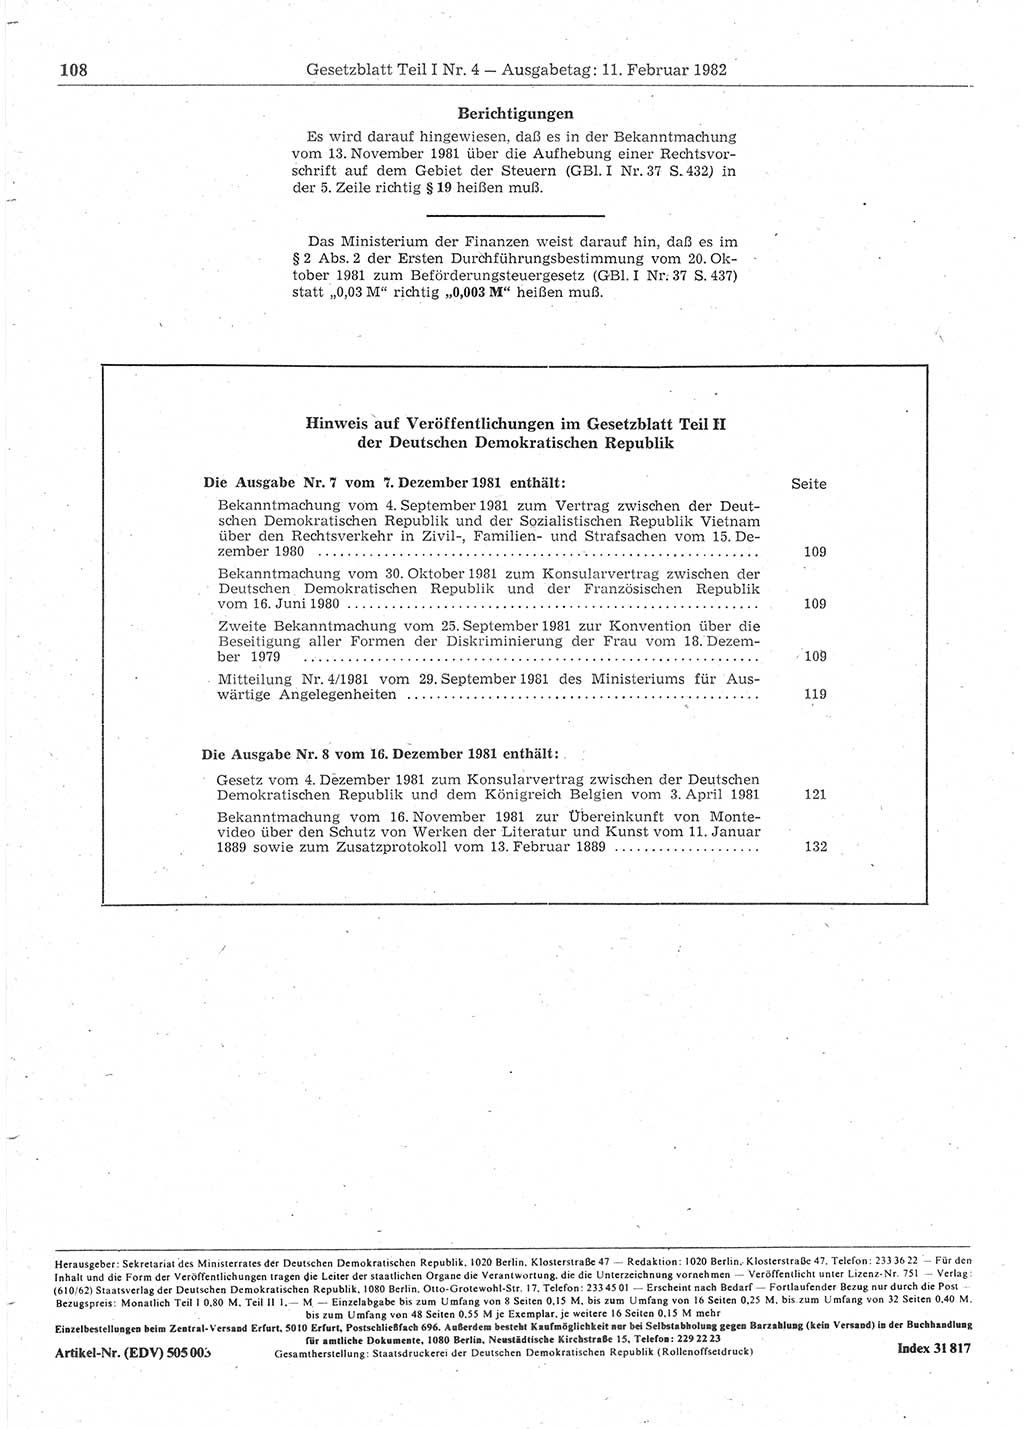 Gesetzblatt (GBl.) der Deutschen Demokratischen Republik (DDR) Teil Ⅰ 1982, Seite 108 (GBl. DDR Ⅰ 1982, S. 108)